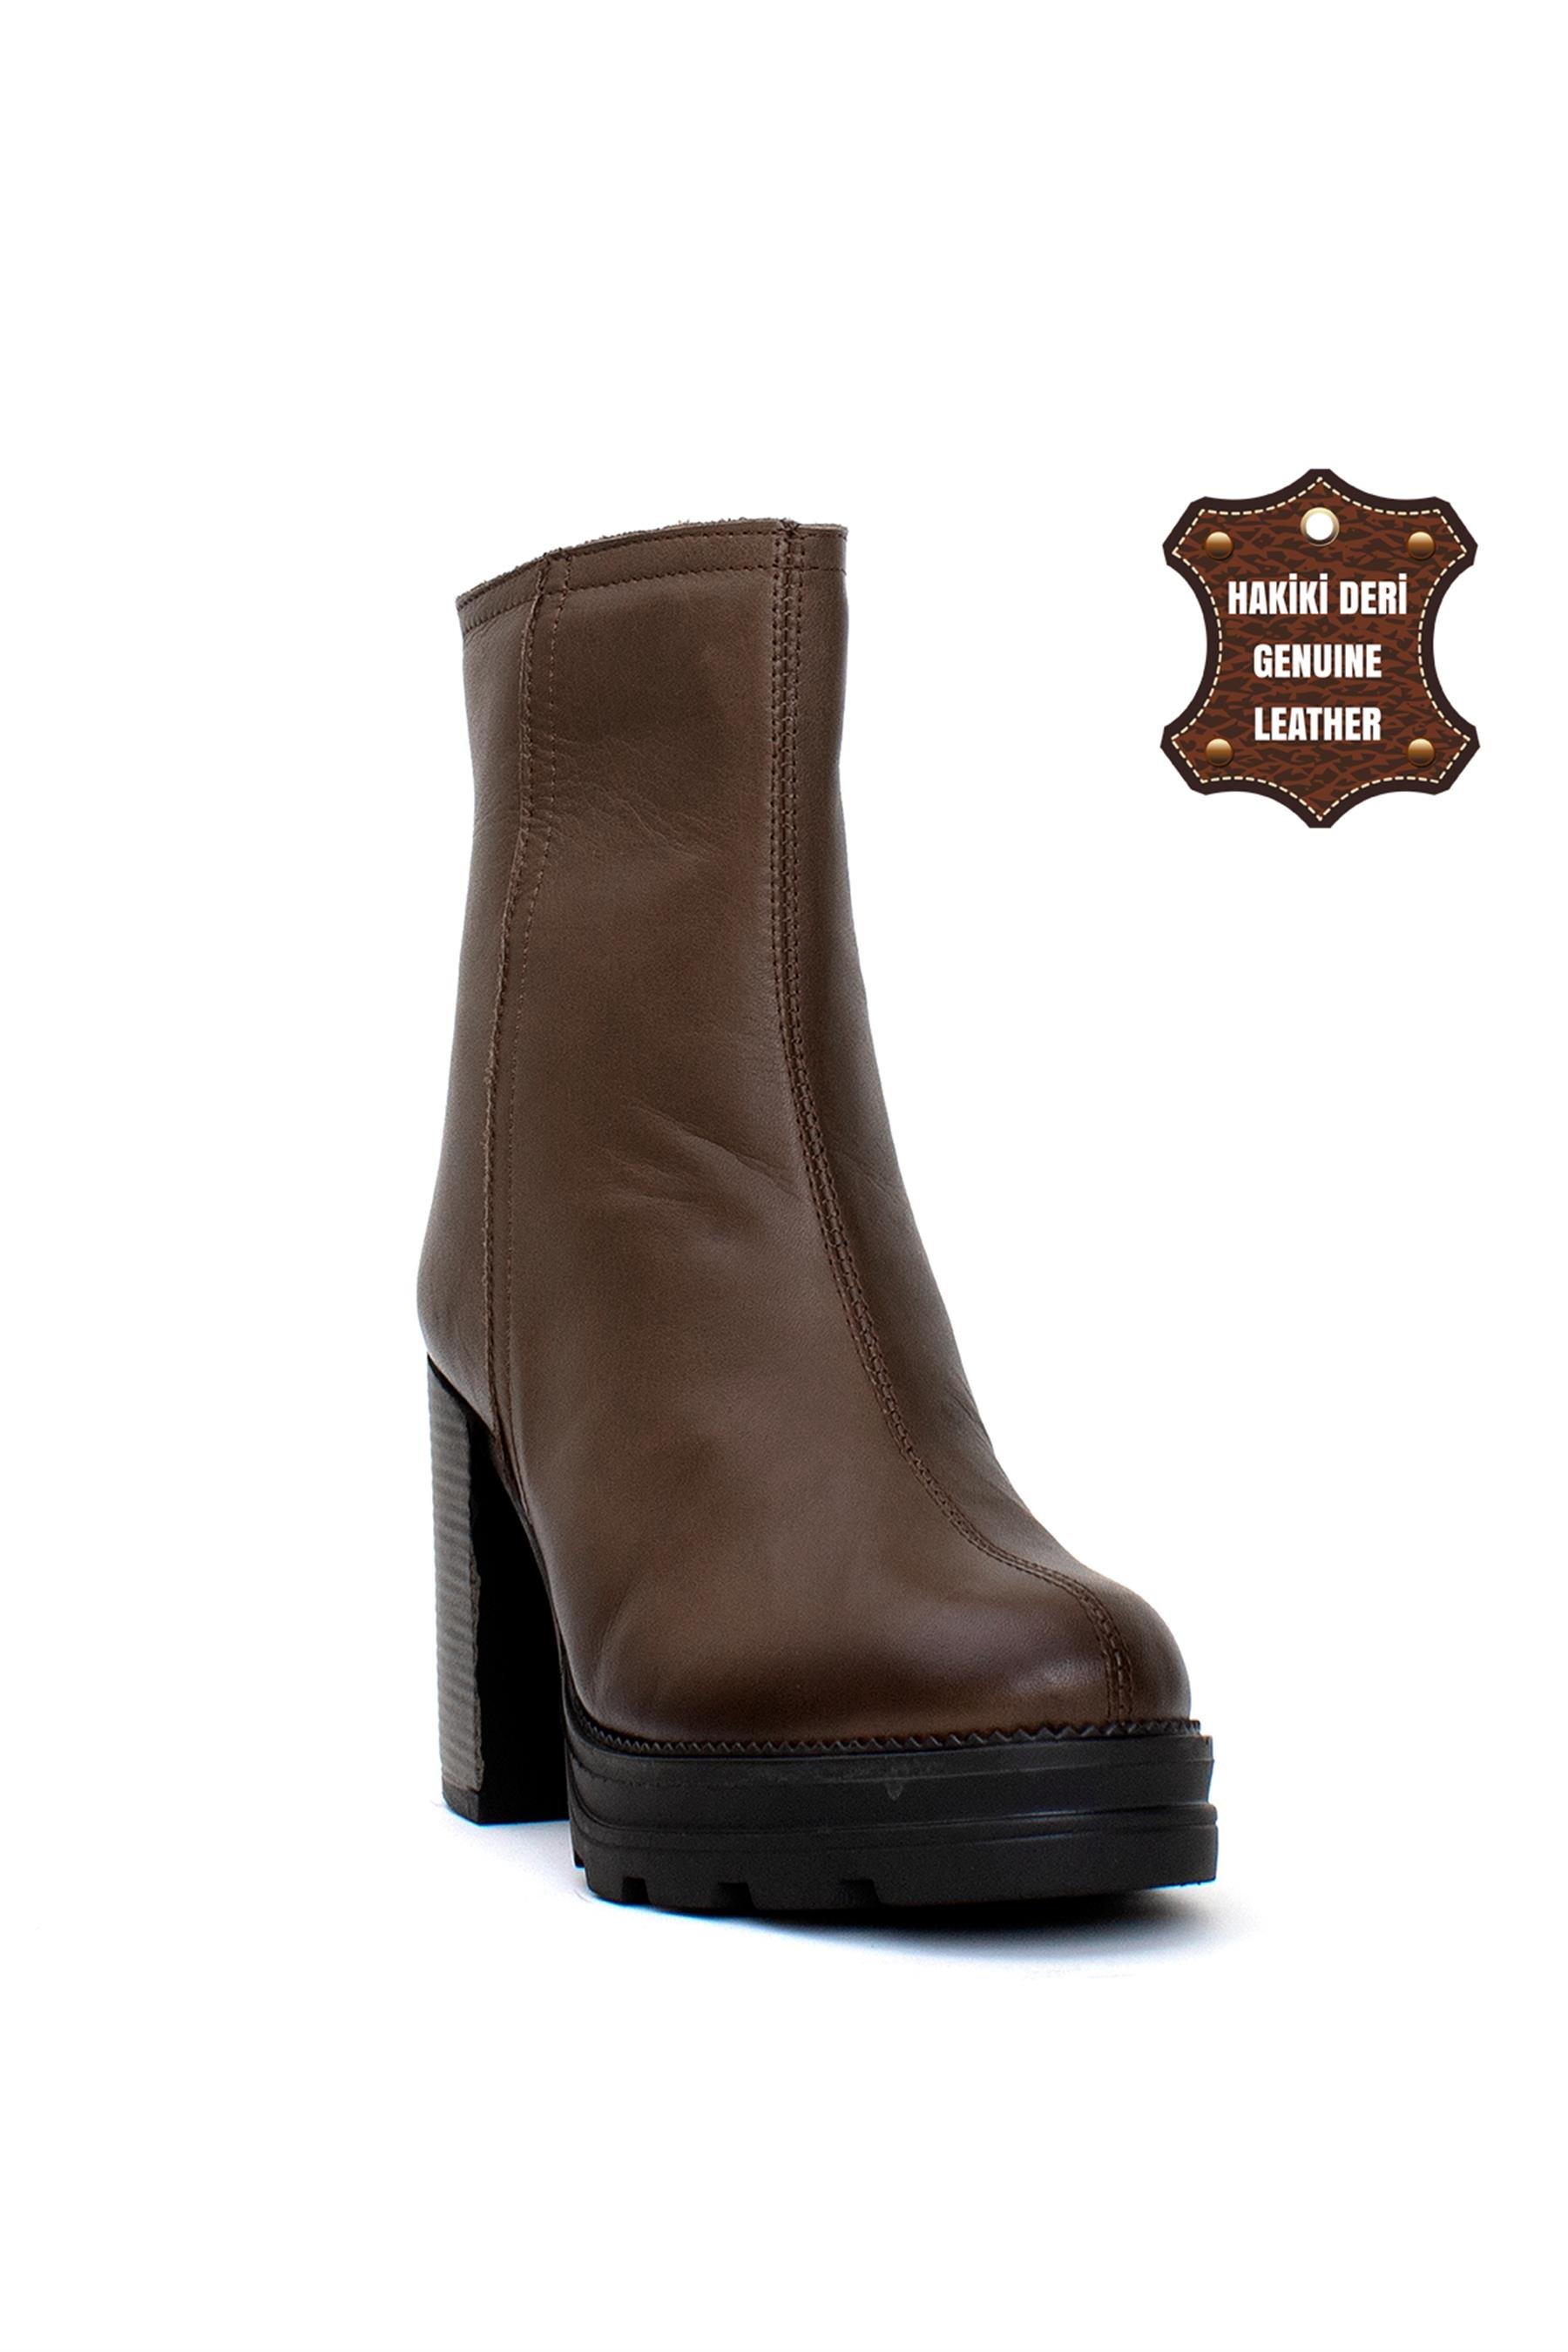 Mammamia 23KB-5090 Kadın Hakiki Deri Topuklu Bot Kahverengi - Ayakkabı  Fuarı Elit